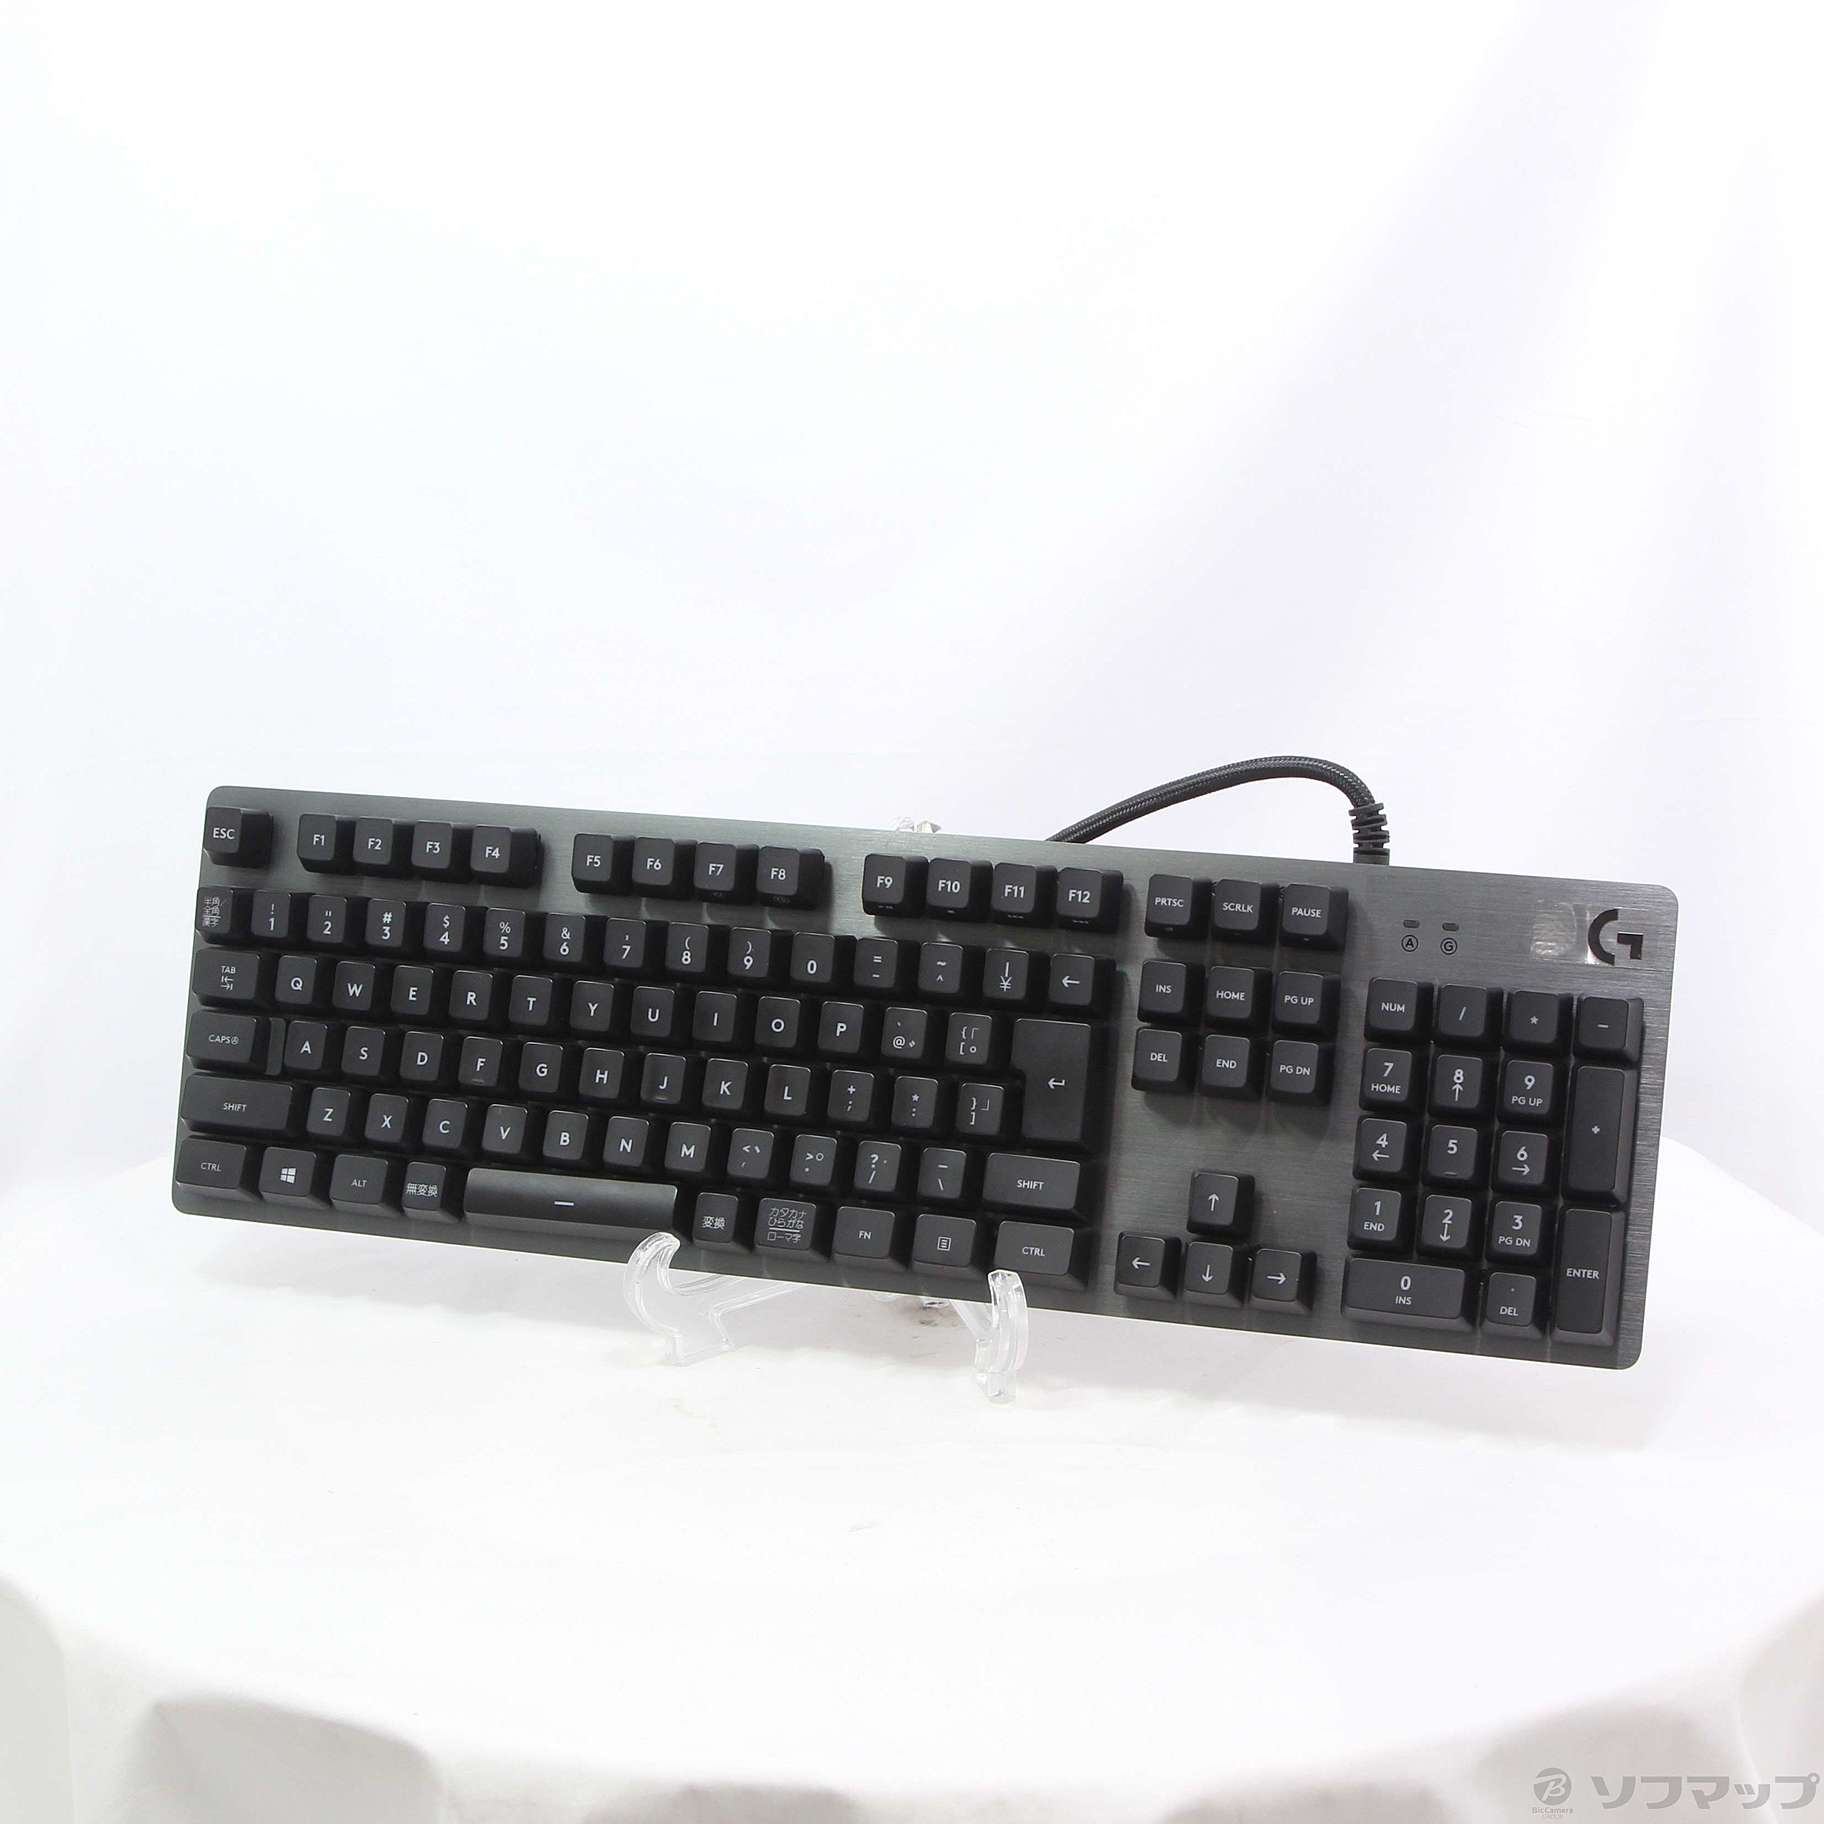 〔展示品〕 G413 Mechanical Gaming Keyboard G413CB カーボン